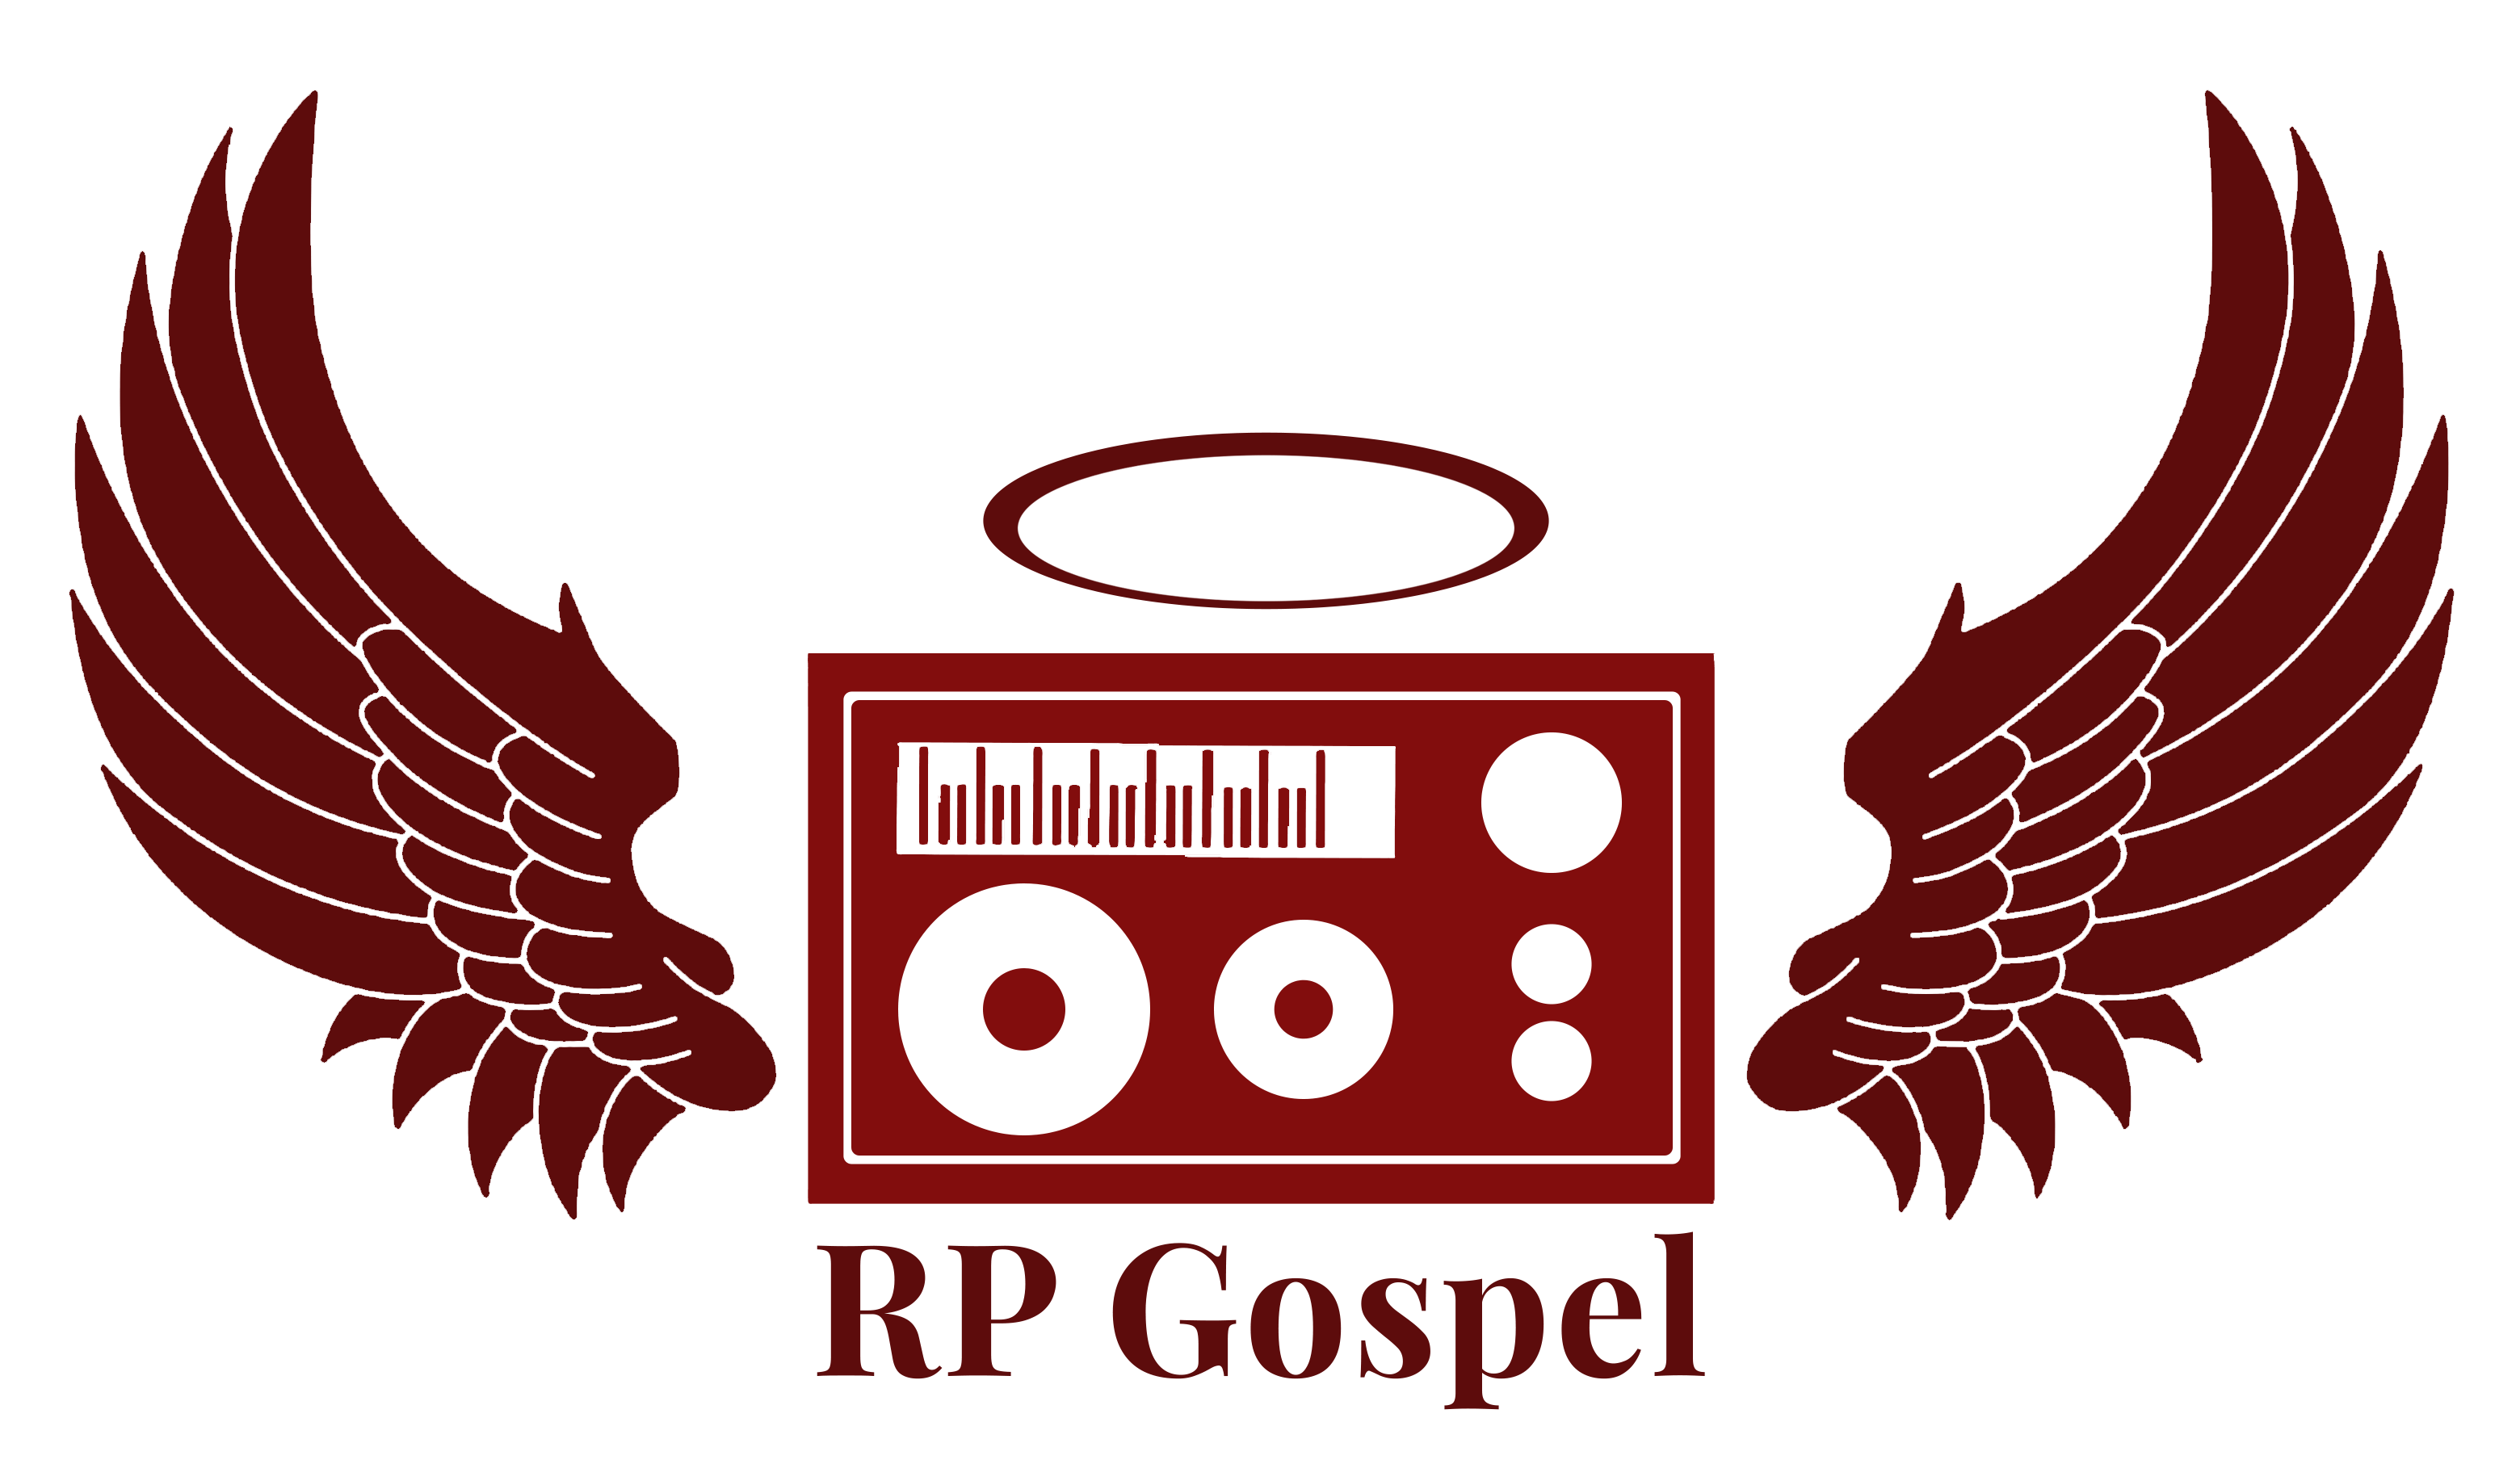 RP Gospel